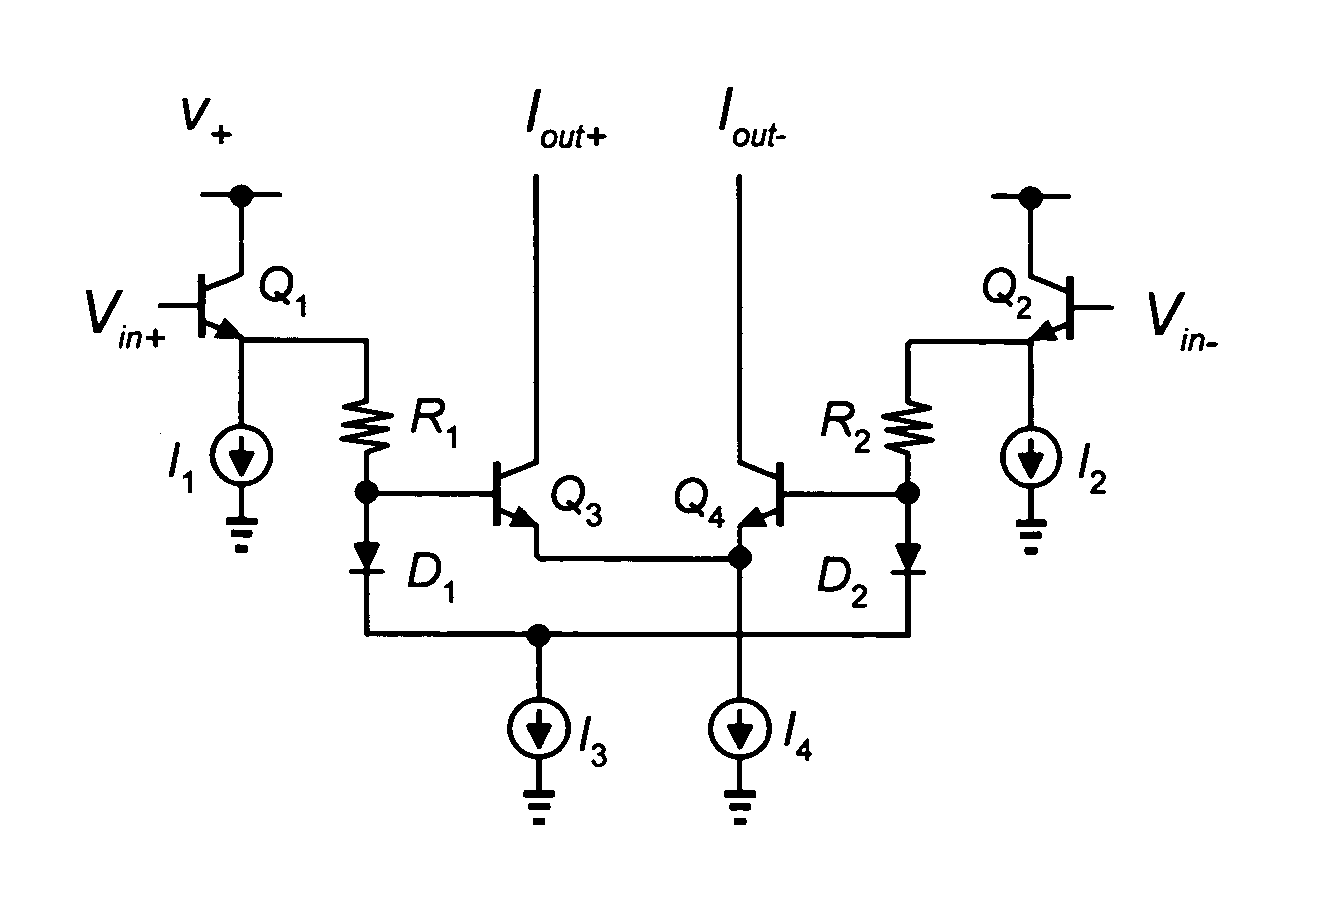 Translinear variable gain amplifier